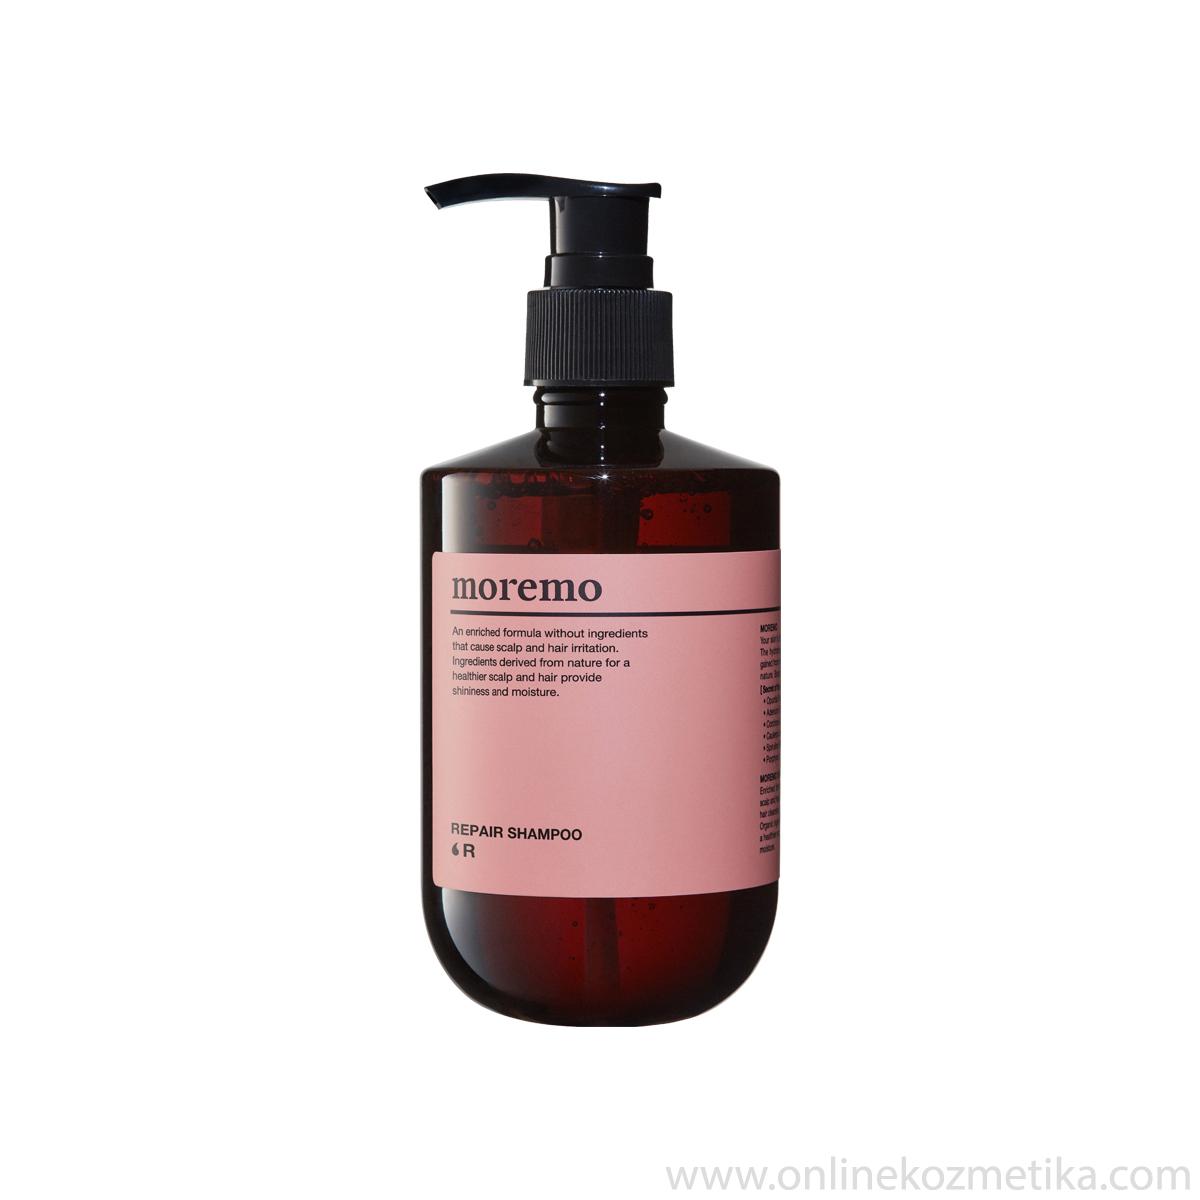 MOREMO Repair Šampon R 300ml 